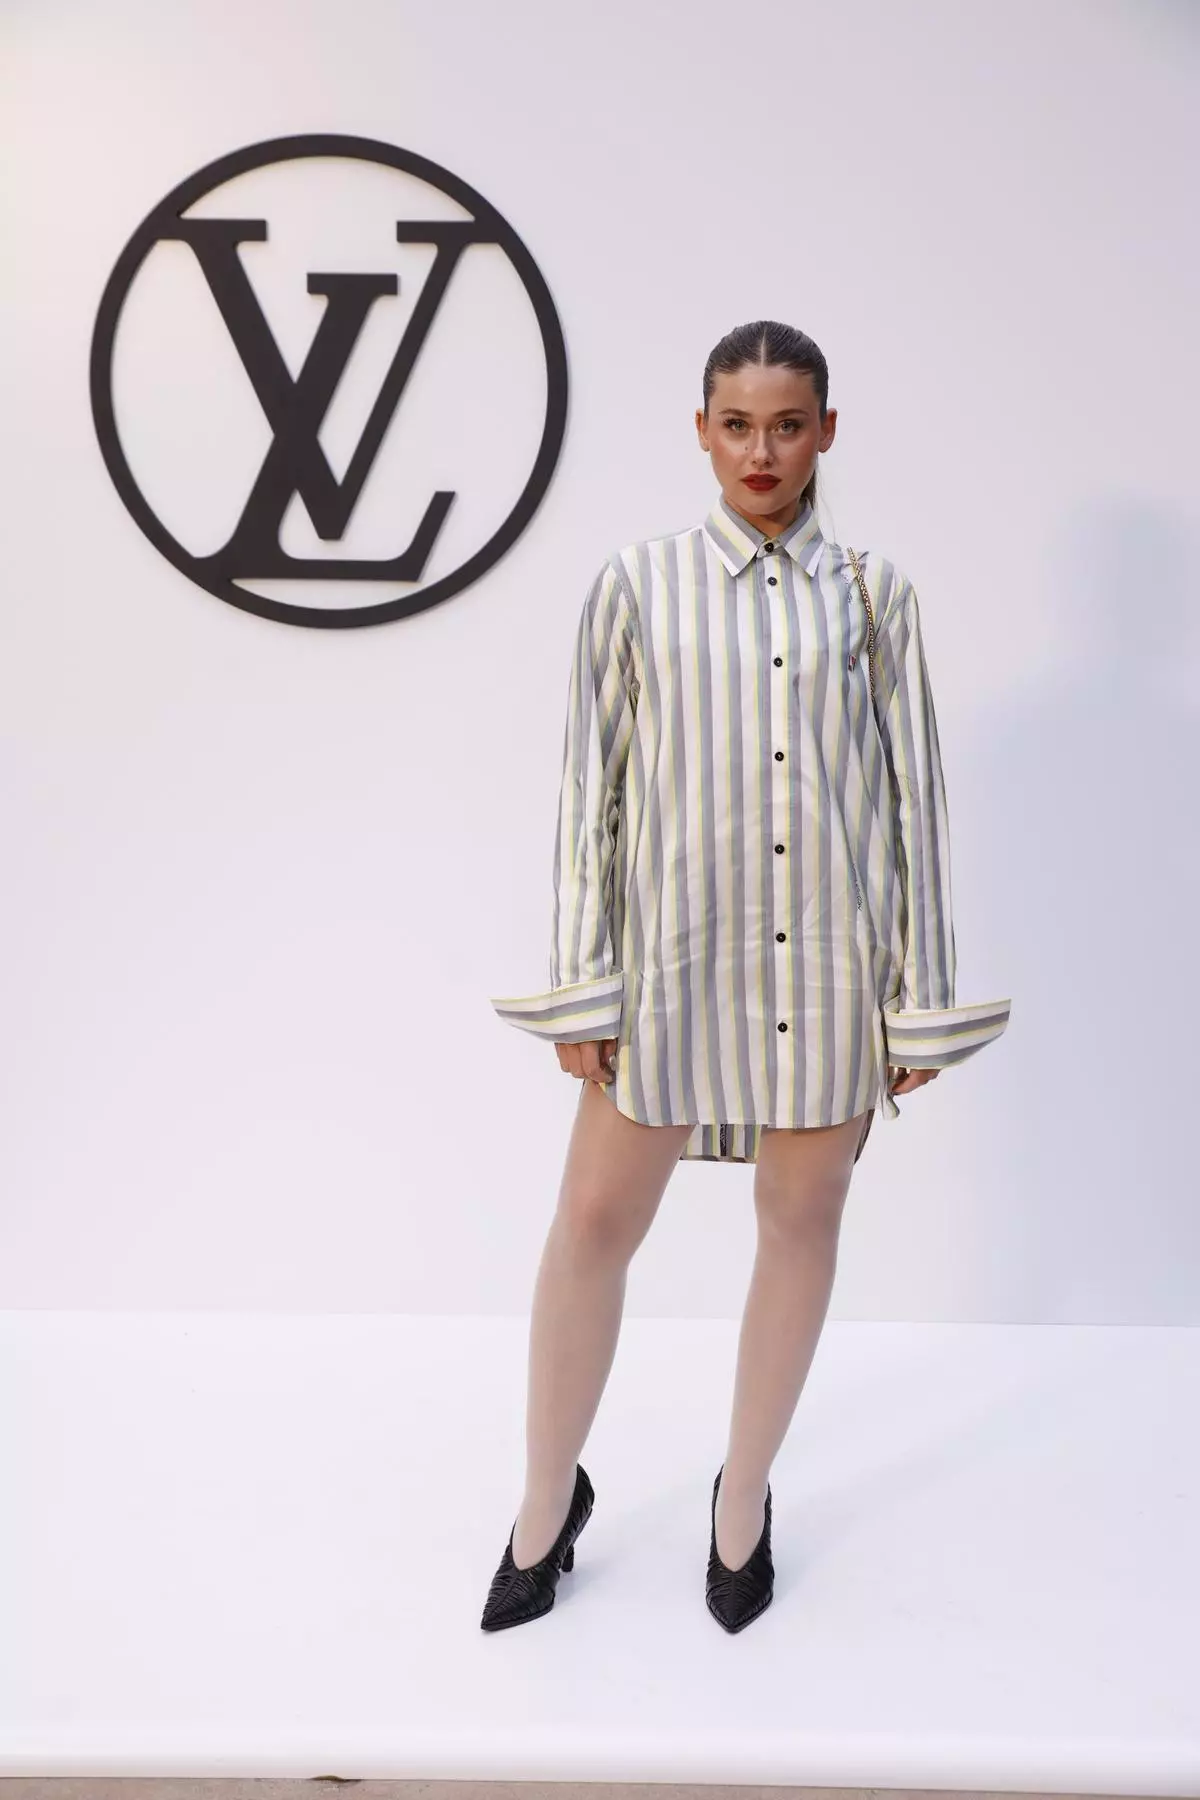 Louis Vuitton congrega a 'celebrities' al presentar su colección en Barcelona